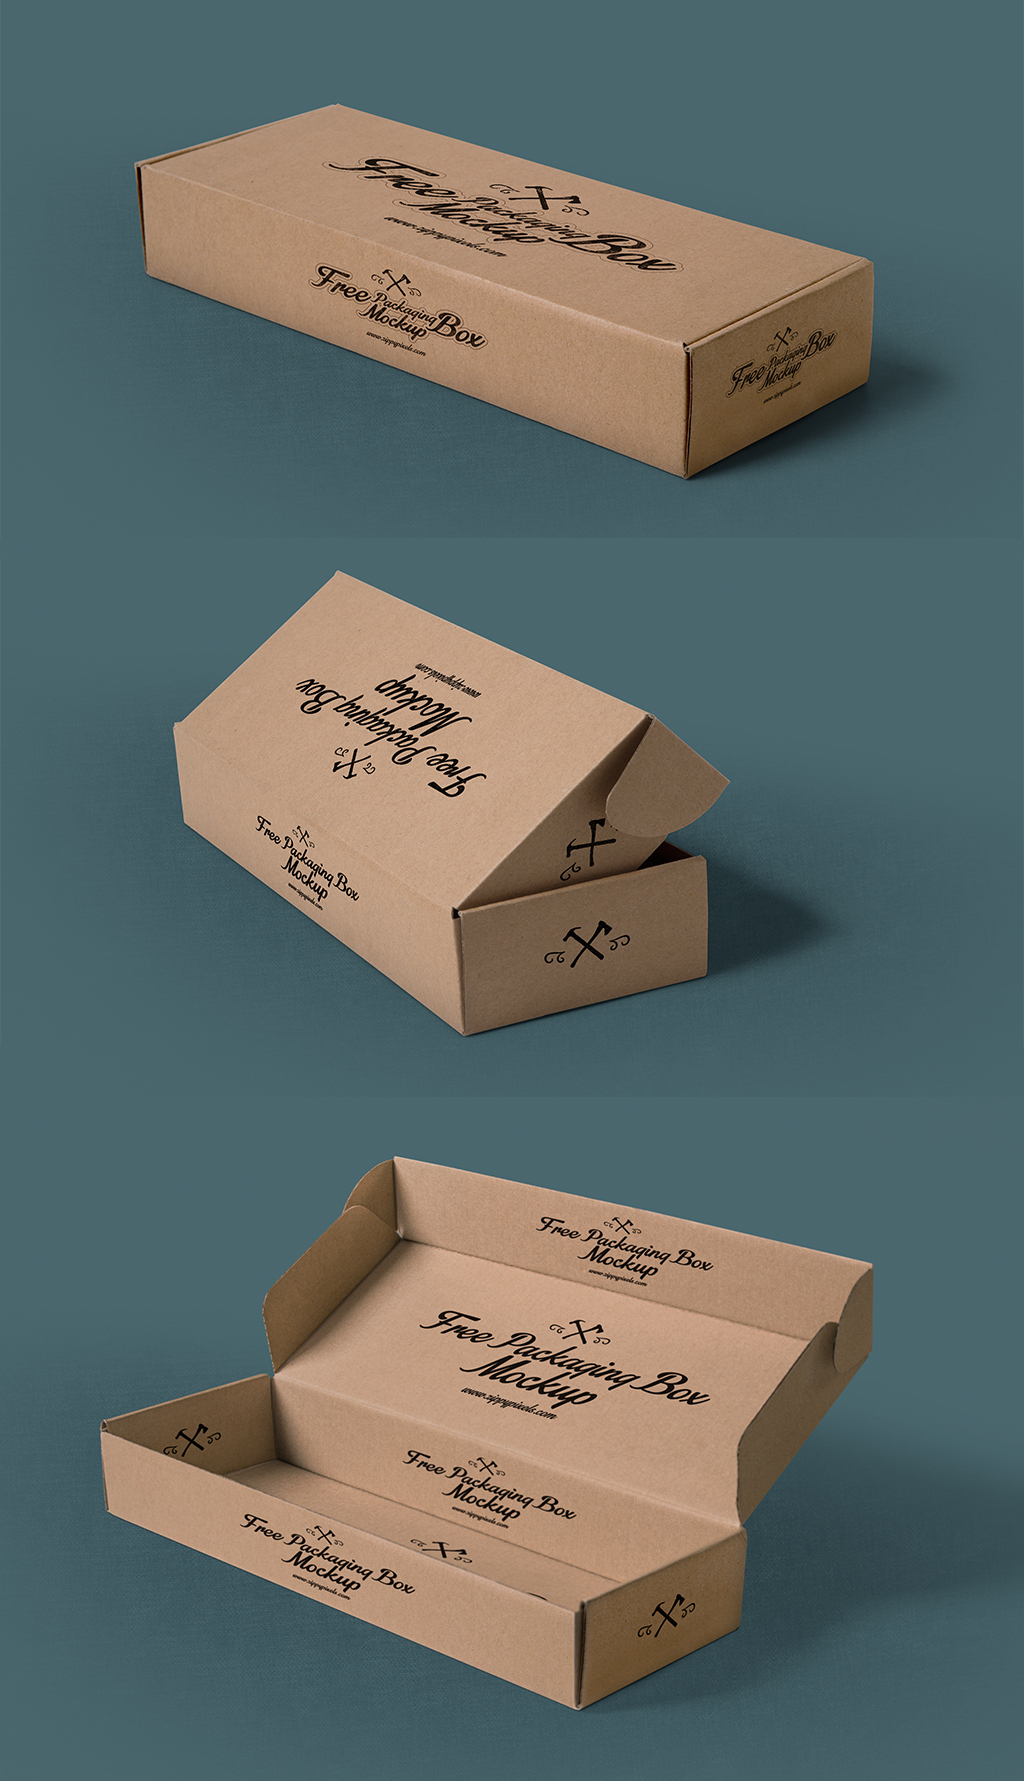 原创仿真高清瓦楞纸箱纸盒包装样机模板-版权可商用